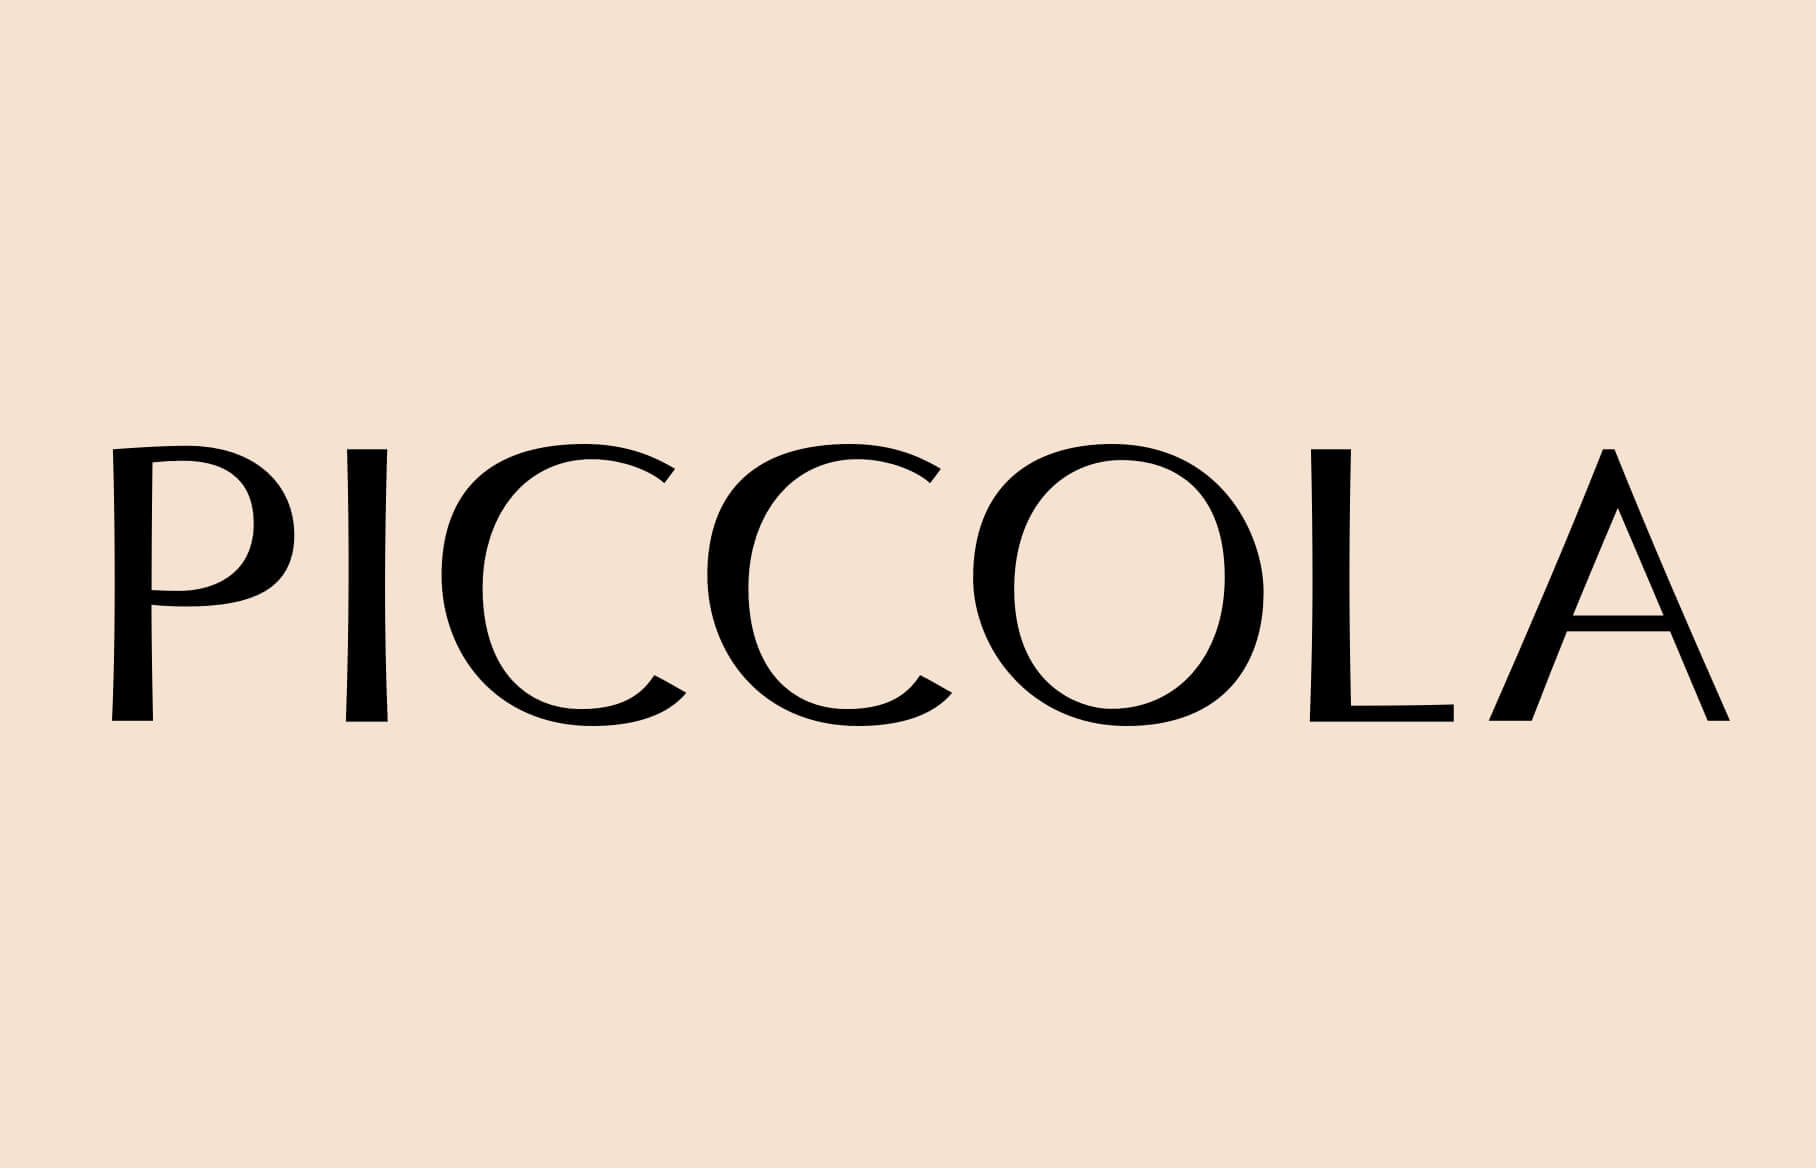 Piccola logotype